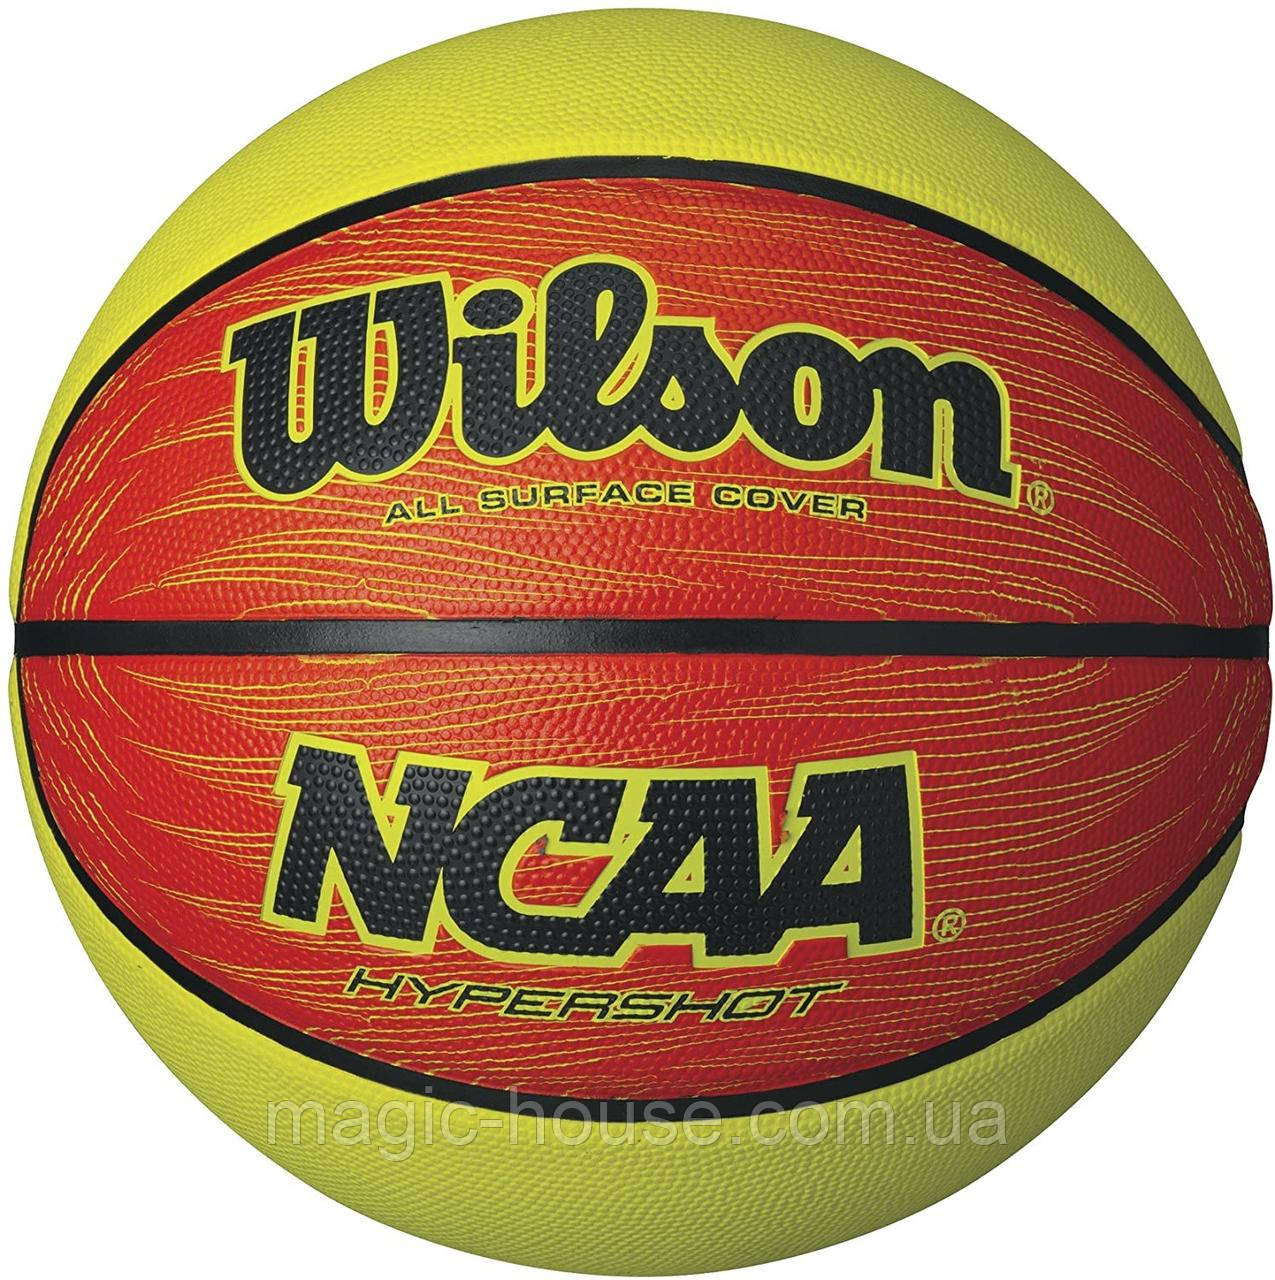 М'яч баскетбольний Wilson NCAA Hyper Shot OrangeLime basketball, Official Size - 29.5 оригінал розмір 7